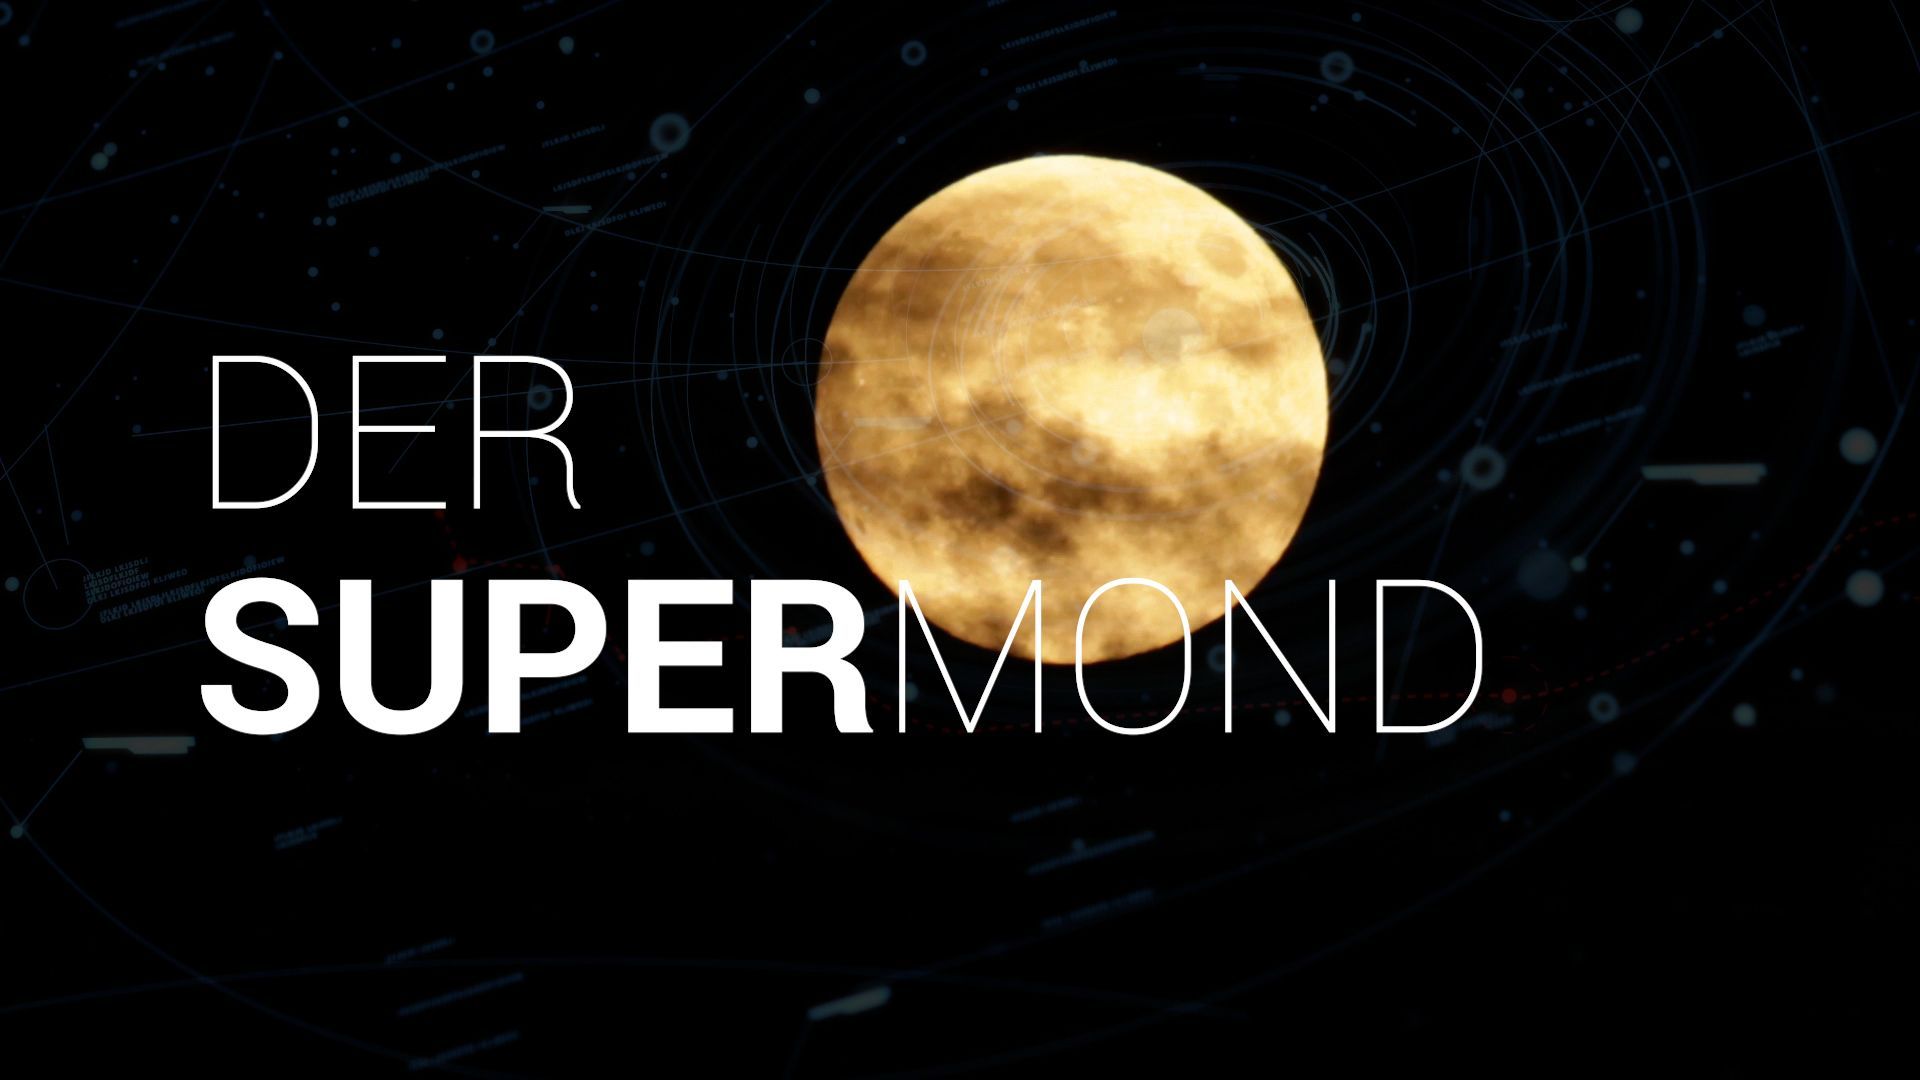 Spektakel am Nachthimmel: Der Supermond kommt der Erde besonders nah